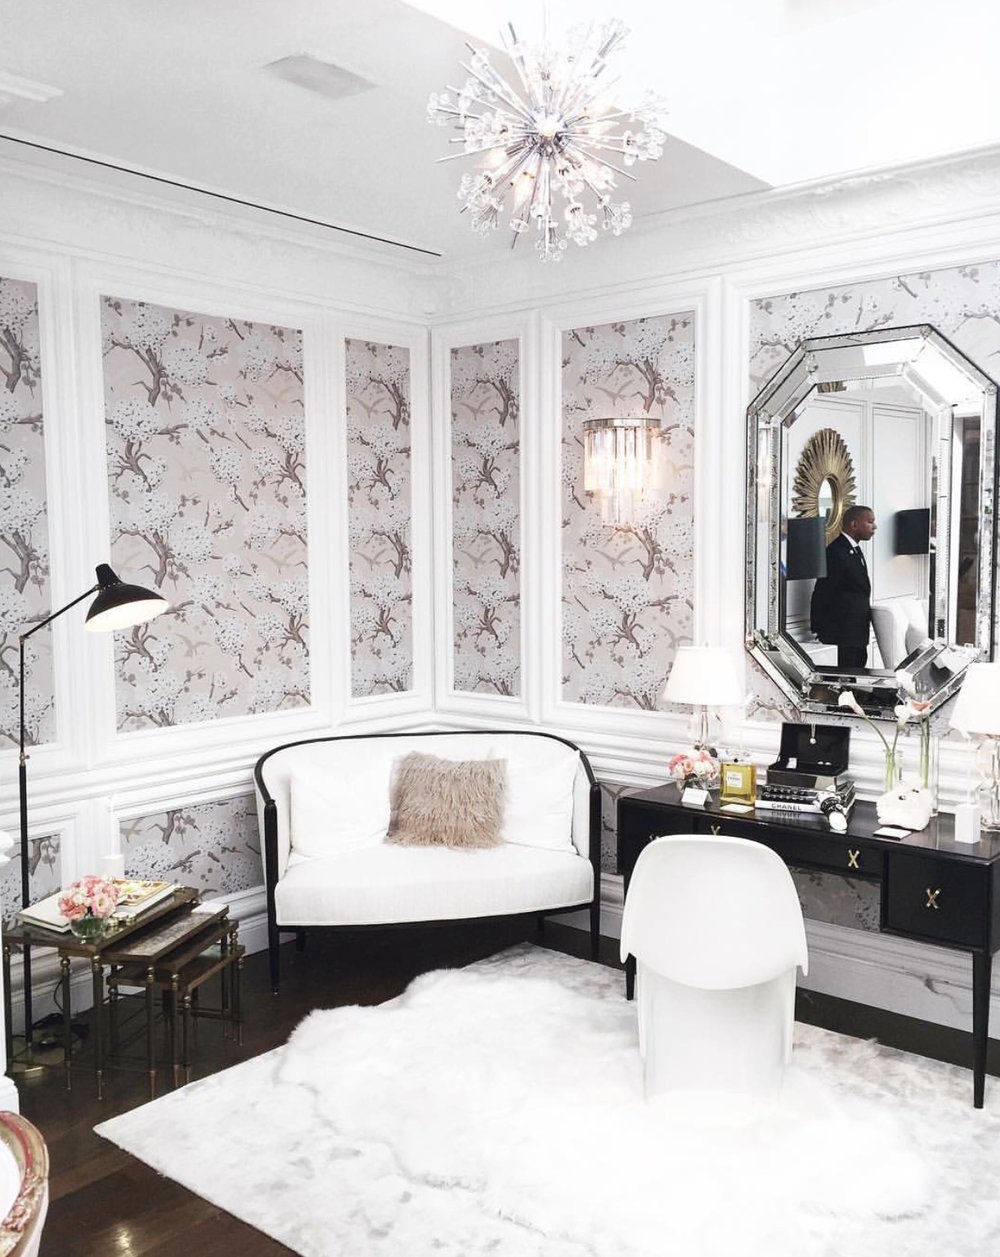 Tư vấn chanel decor for room Thiết kế phòng với phong cách Chanel đặc trưng